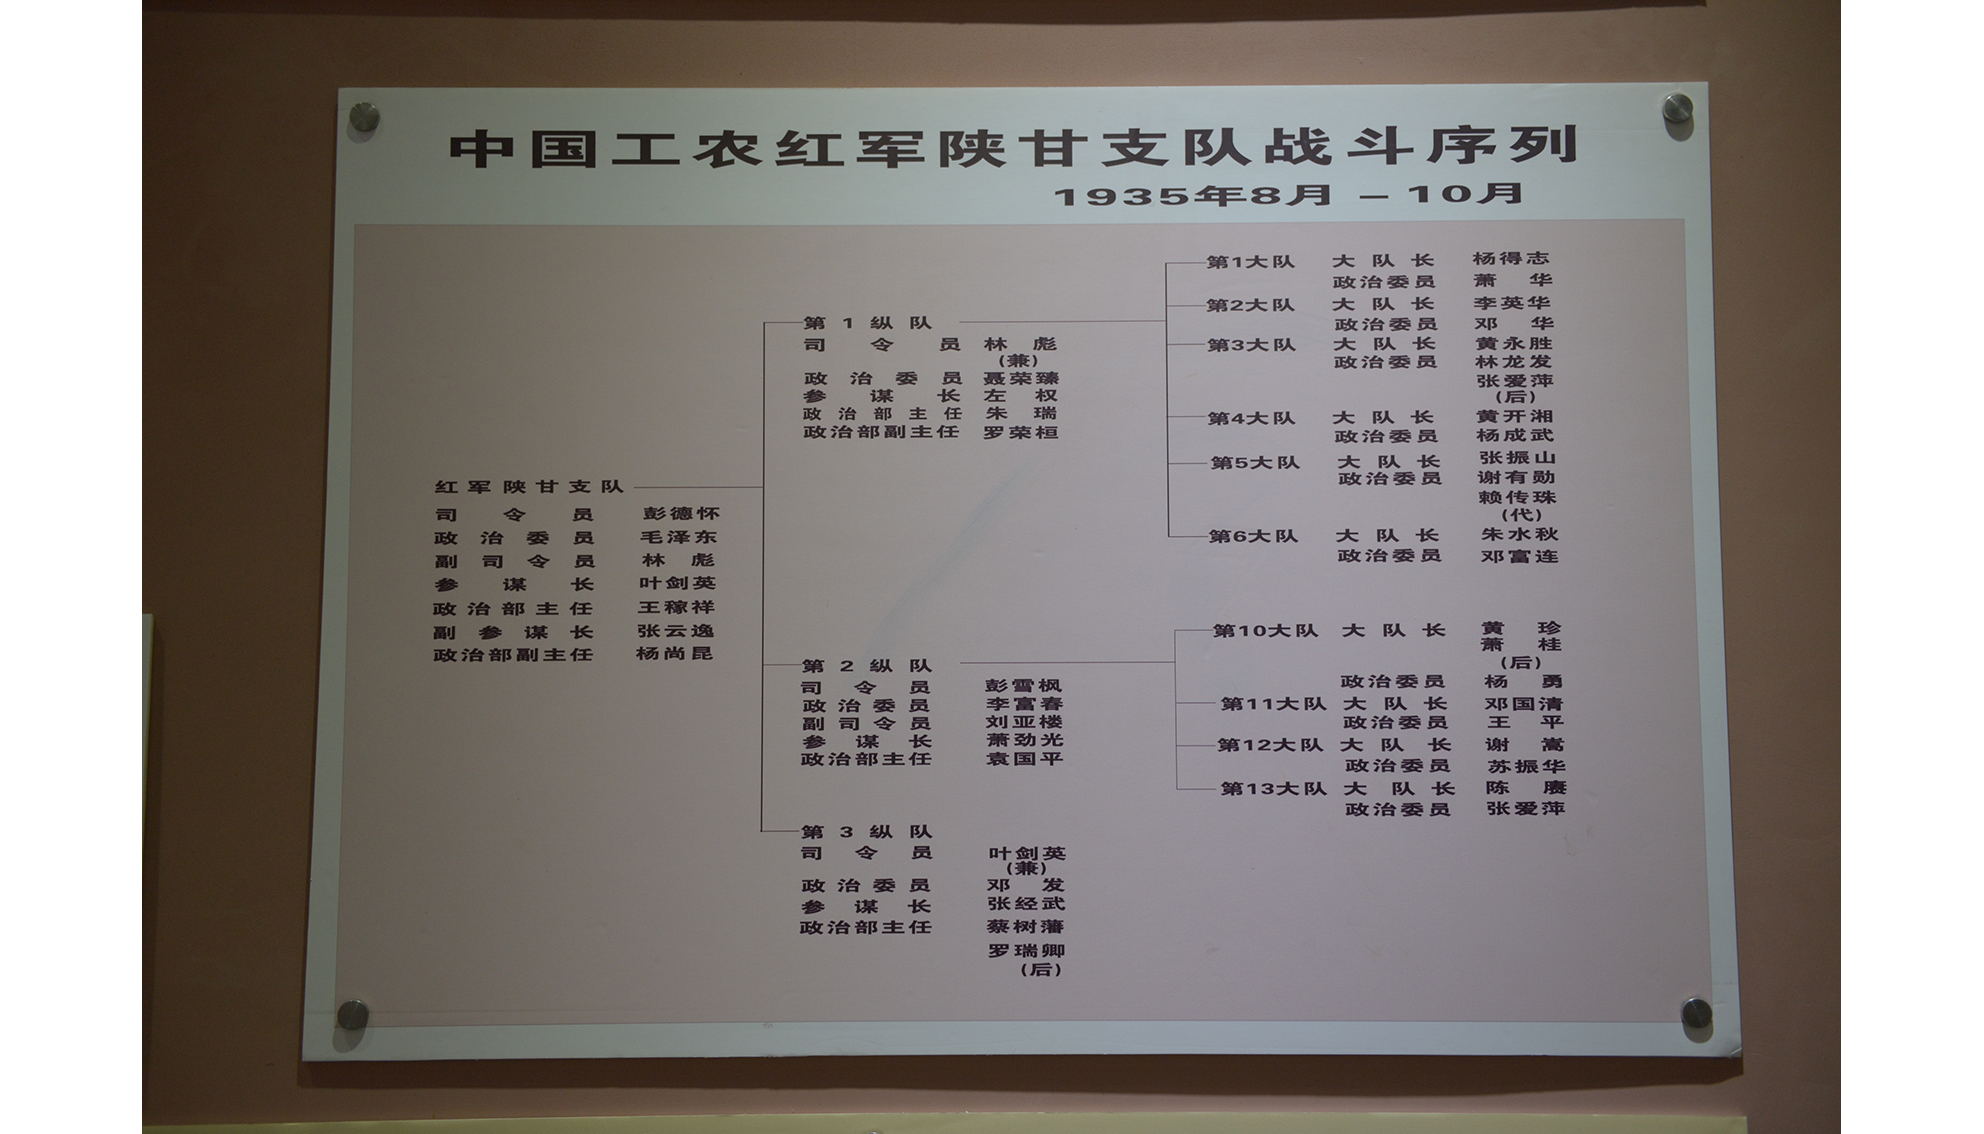 中国工农红军陕甘支队战斗序列表